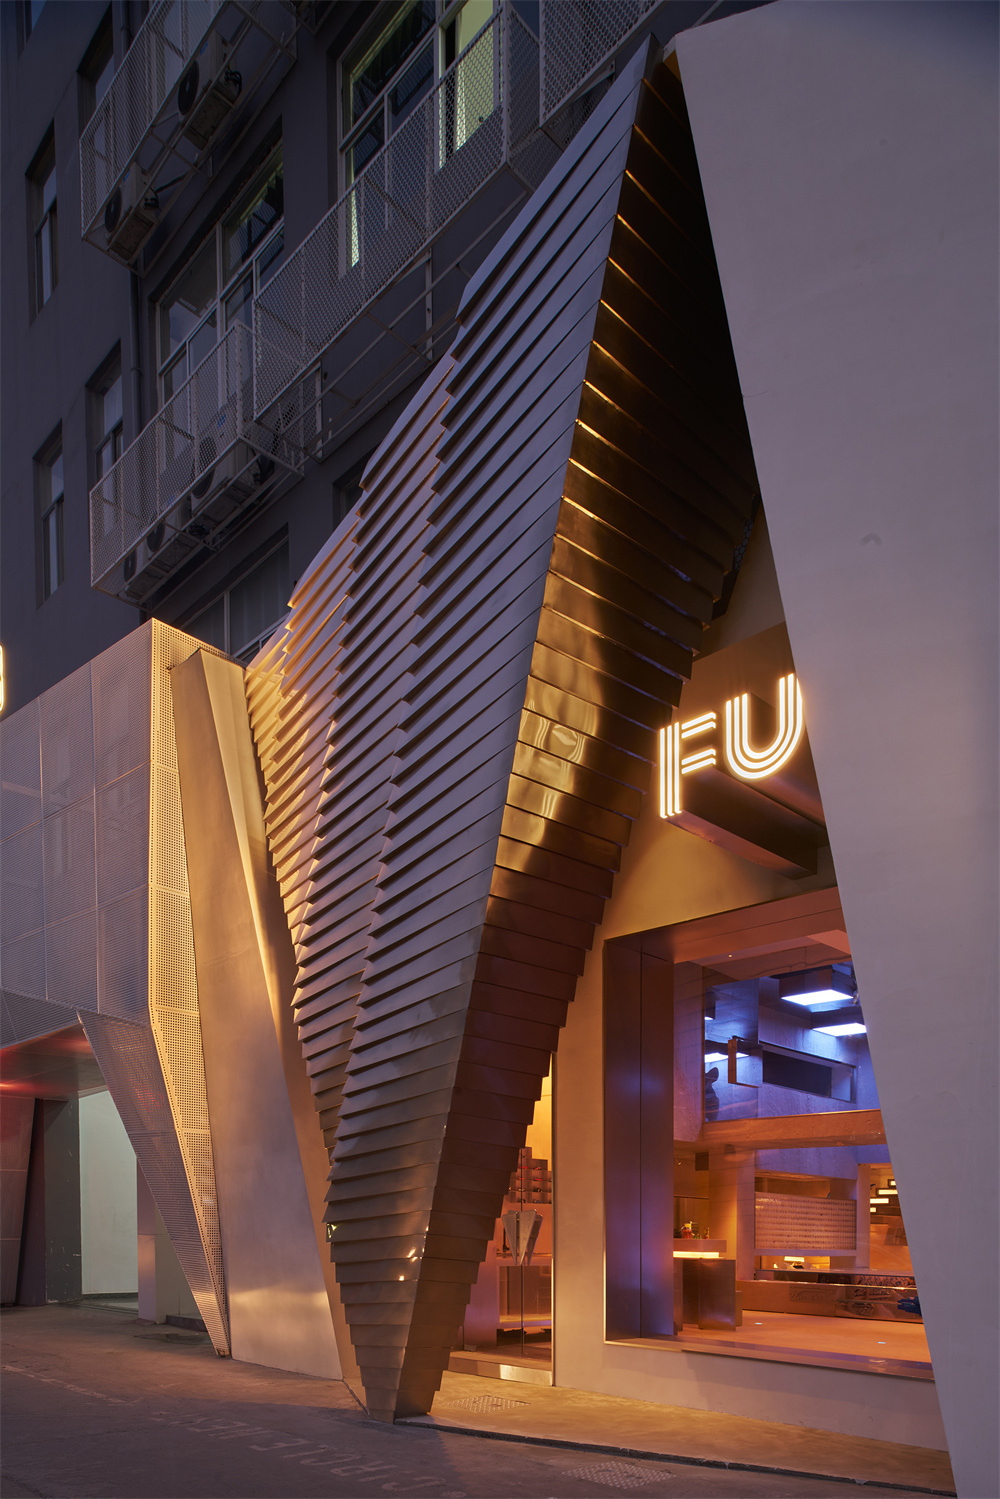 深圳灯光设计拍摄案例 |FU潮玩行为实验室照明设计,不锈钢、镜面、浮雕、雕塑、沙盘,潮流空间